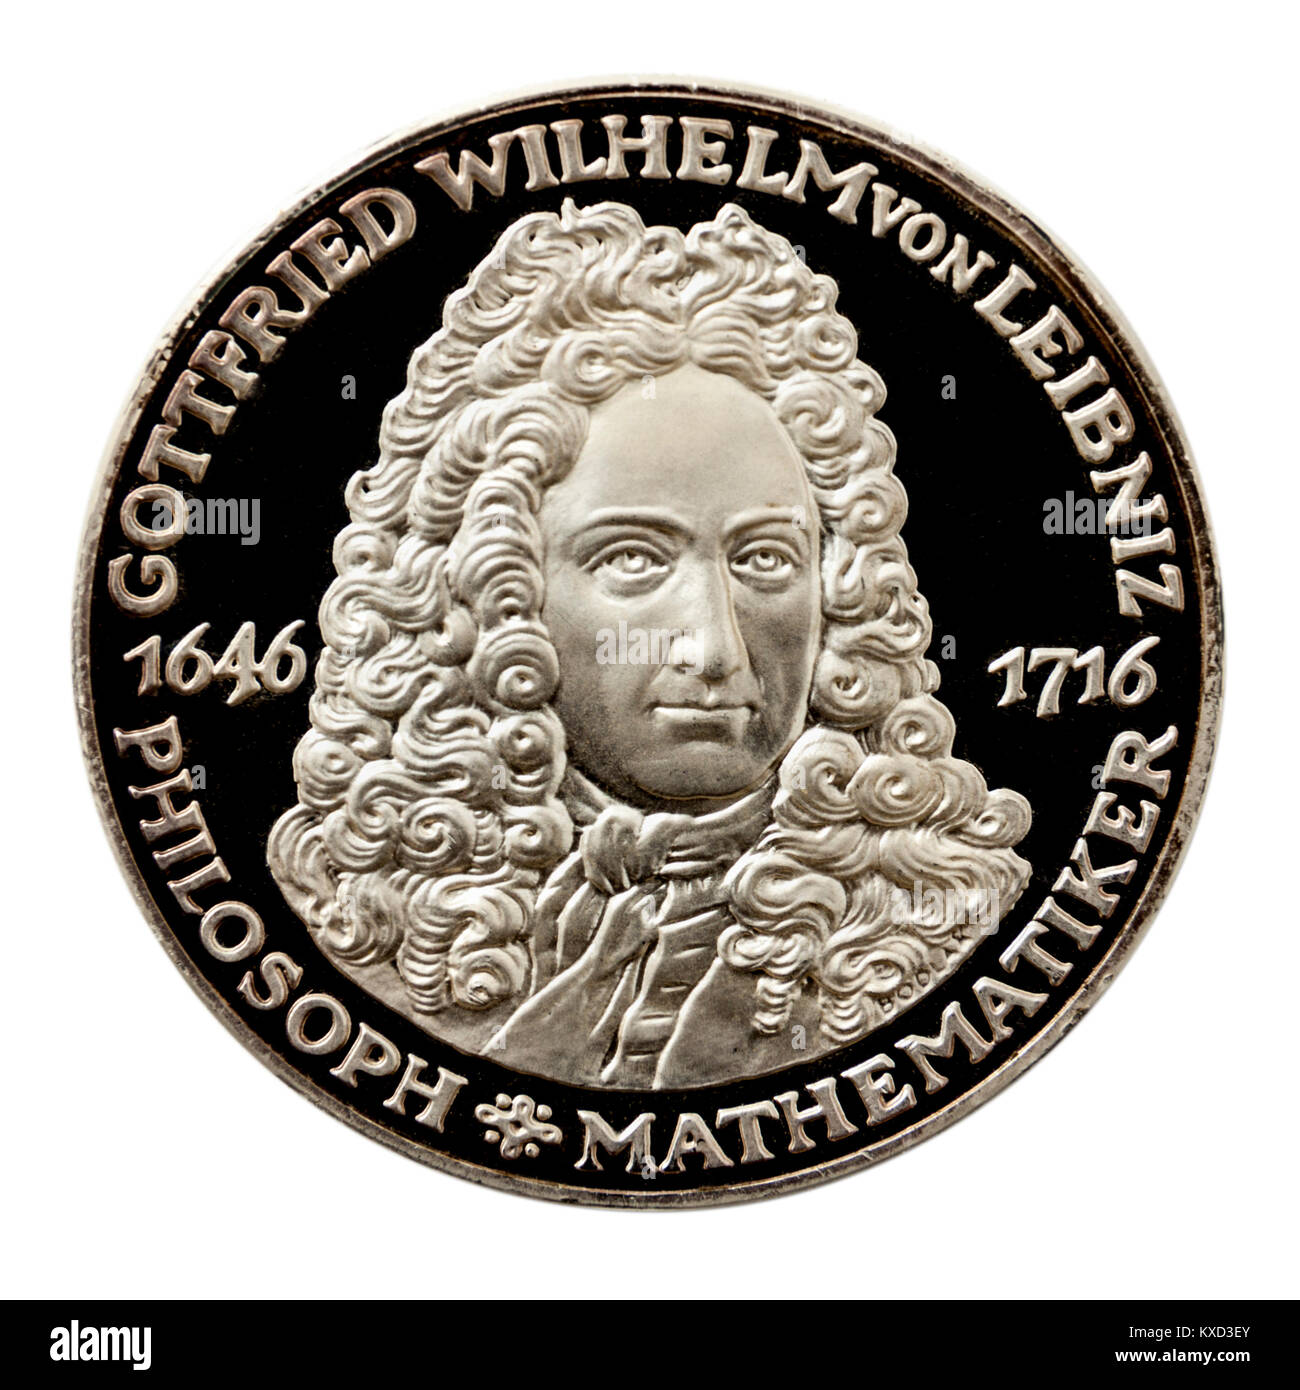 99,9% Beweis Silber Medaillon mit Gottfried Wilhelm von Leibniz (1646-1716), deutscher Mathematiker berühmt für die Erfindung der Leibniz-Rad. Stockfoto